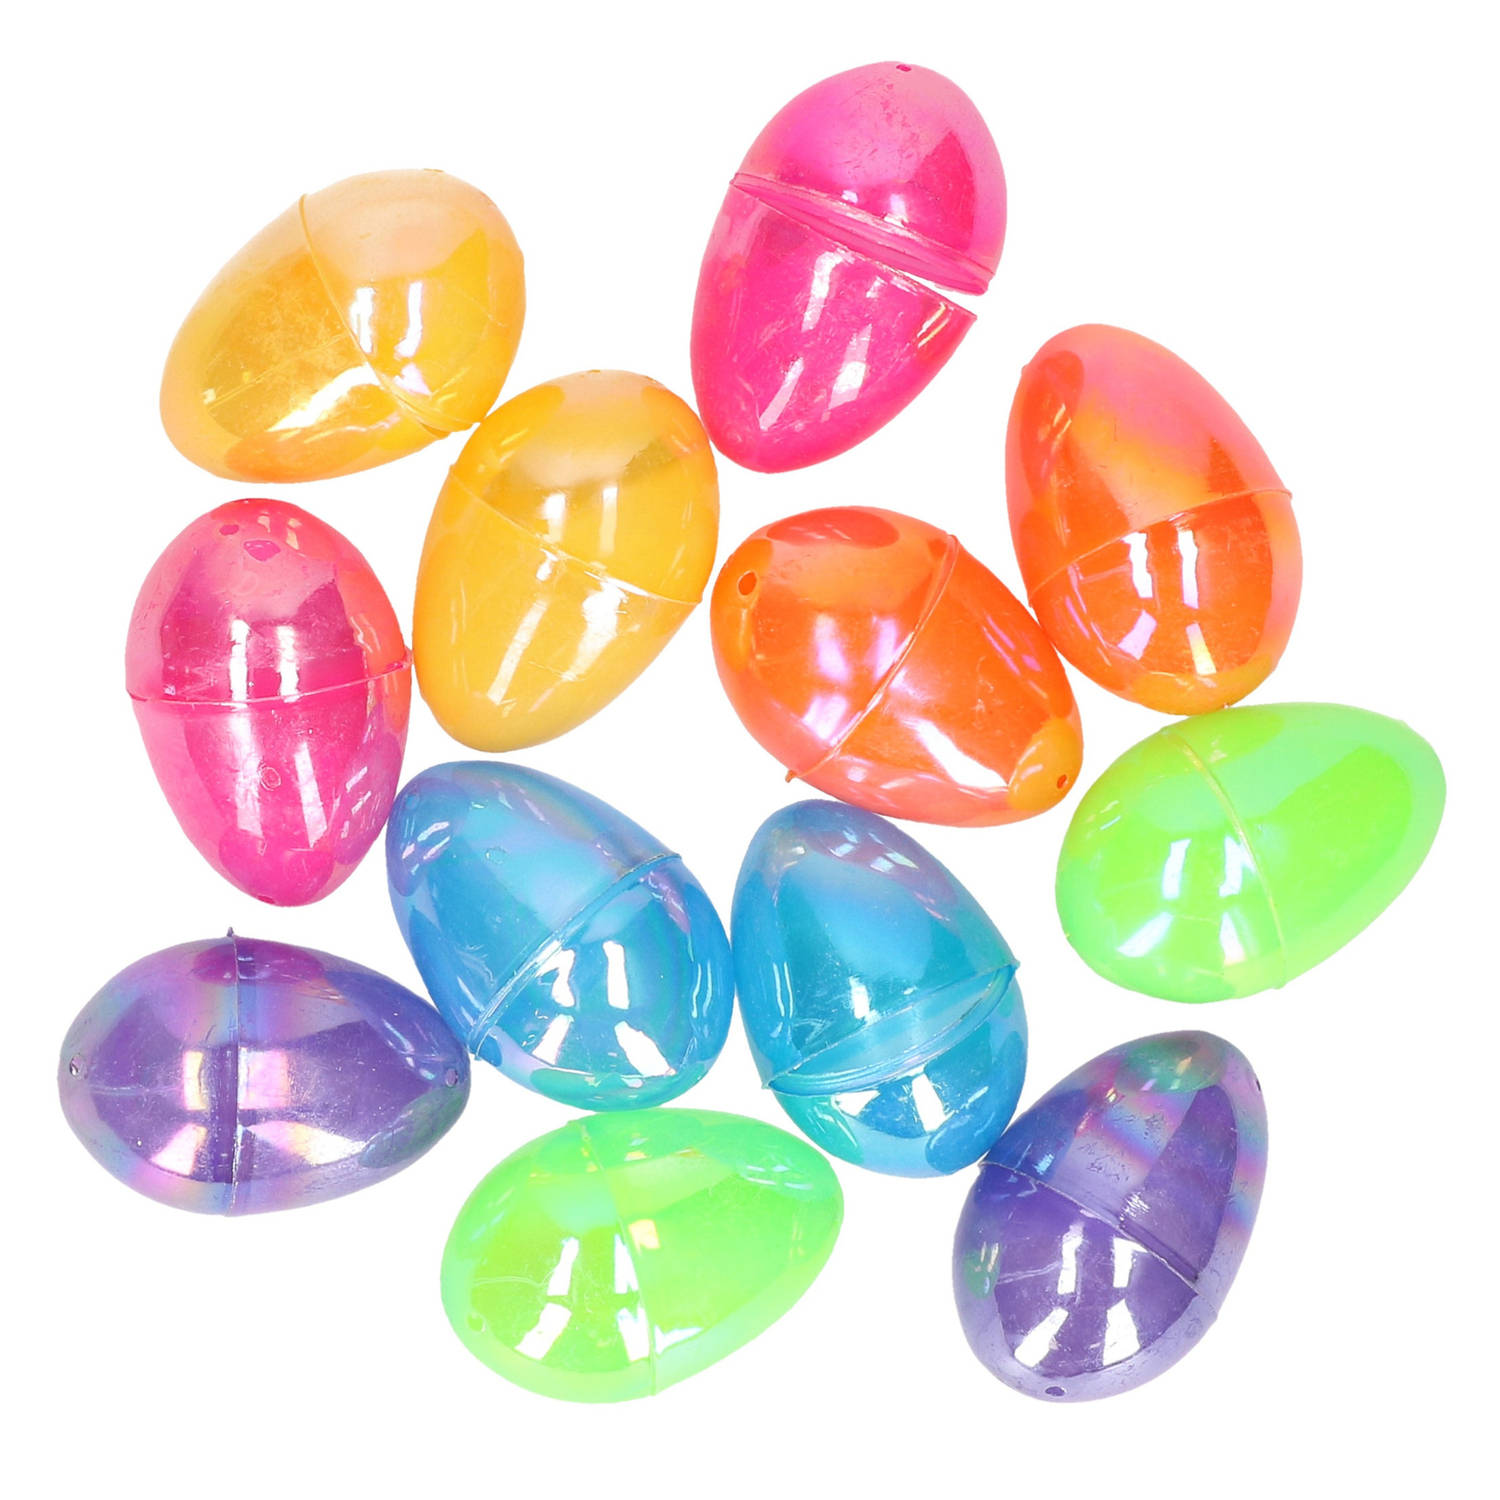 12x stuks gekleurde metallic eieren/paaseieren 6 cm - Feestdecoratievoorwerp